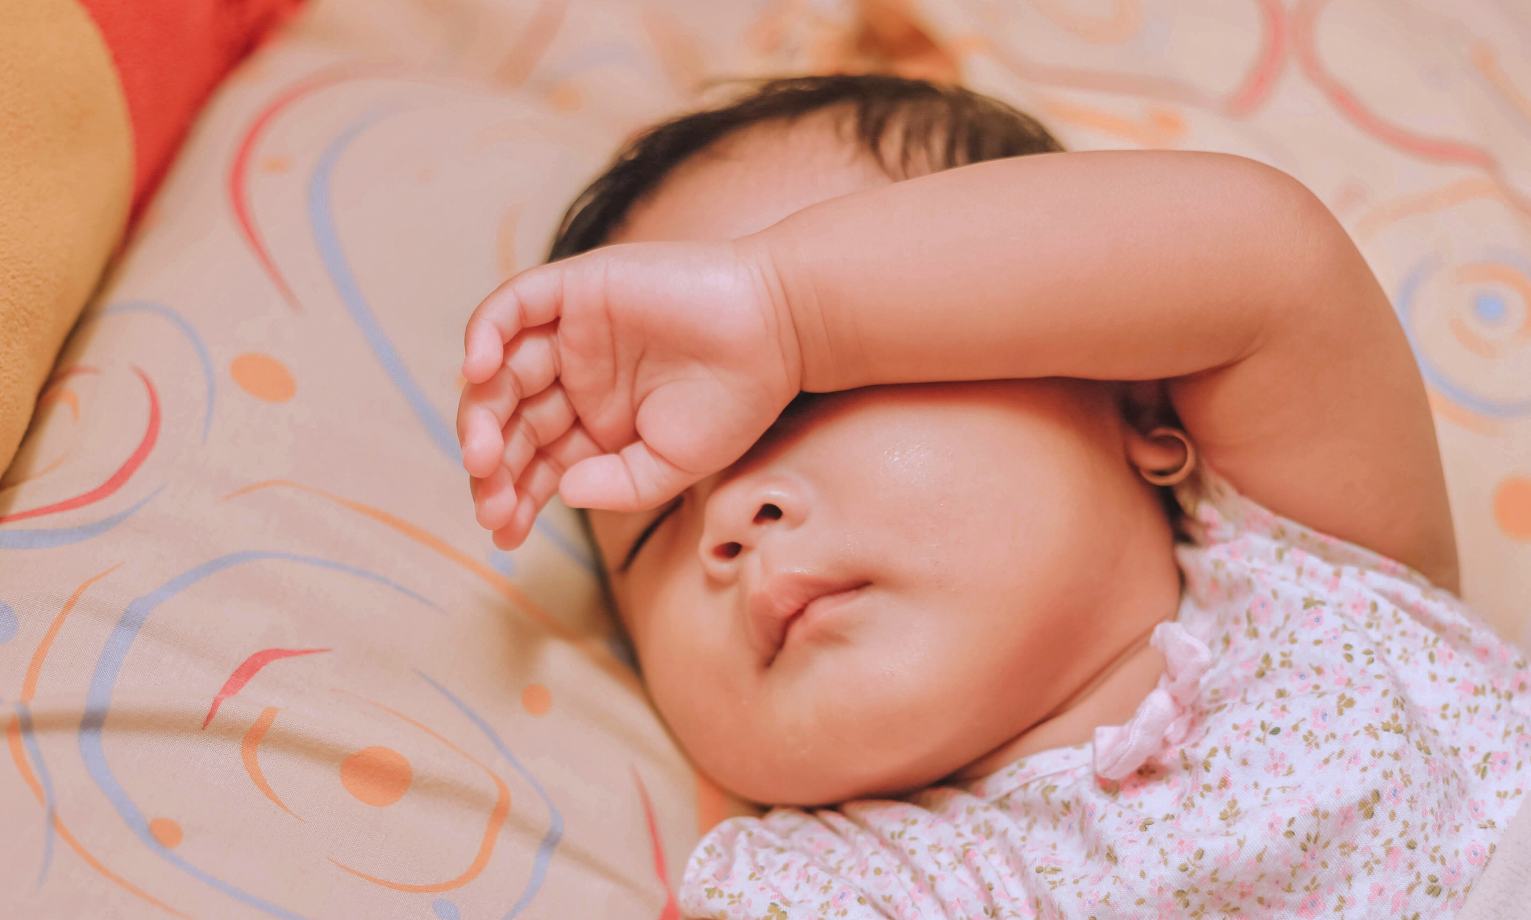 Bruit blanc bébé : le secret pour un sommeil paisible ?